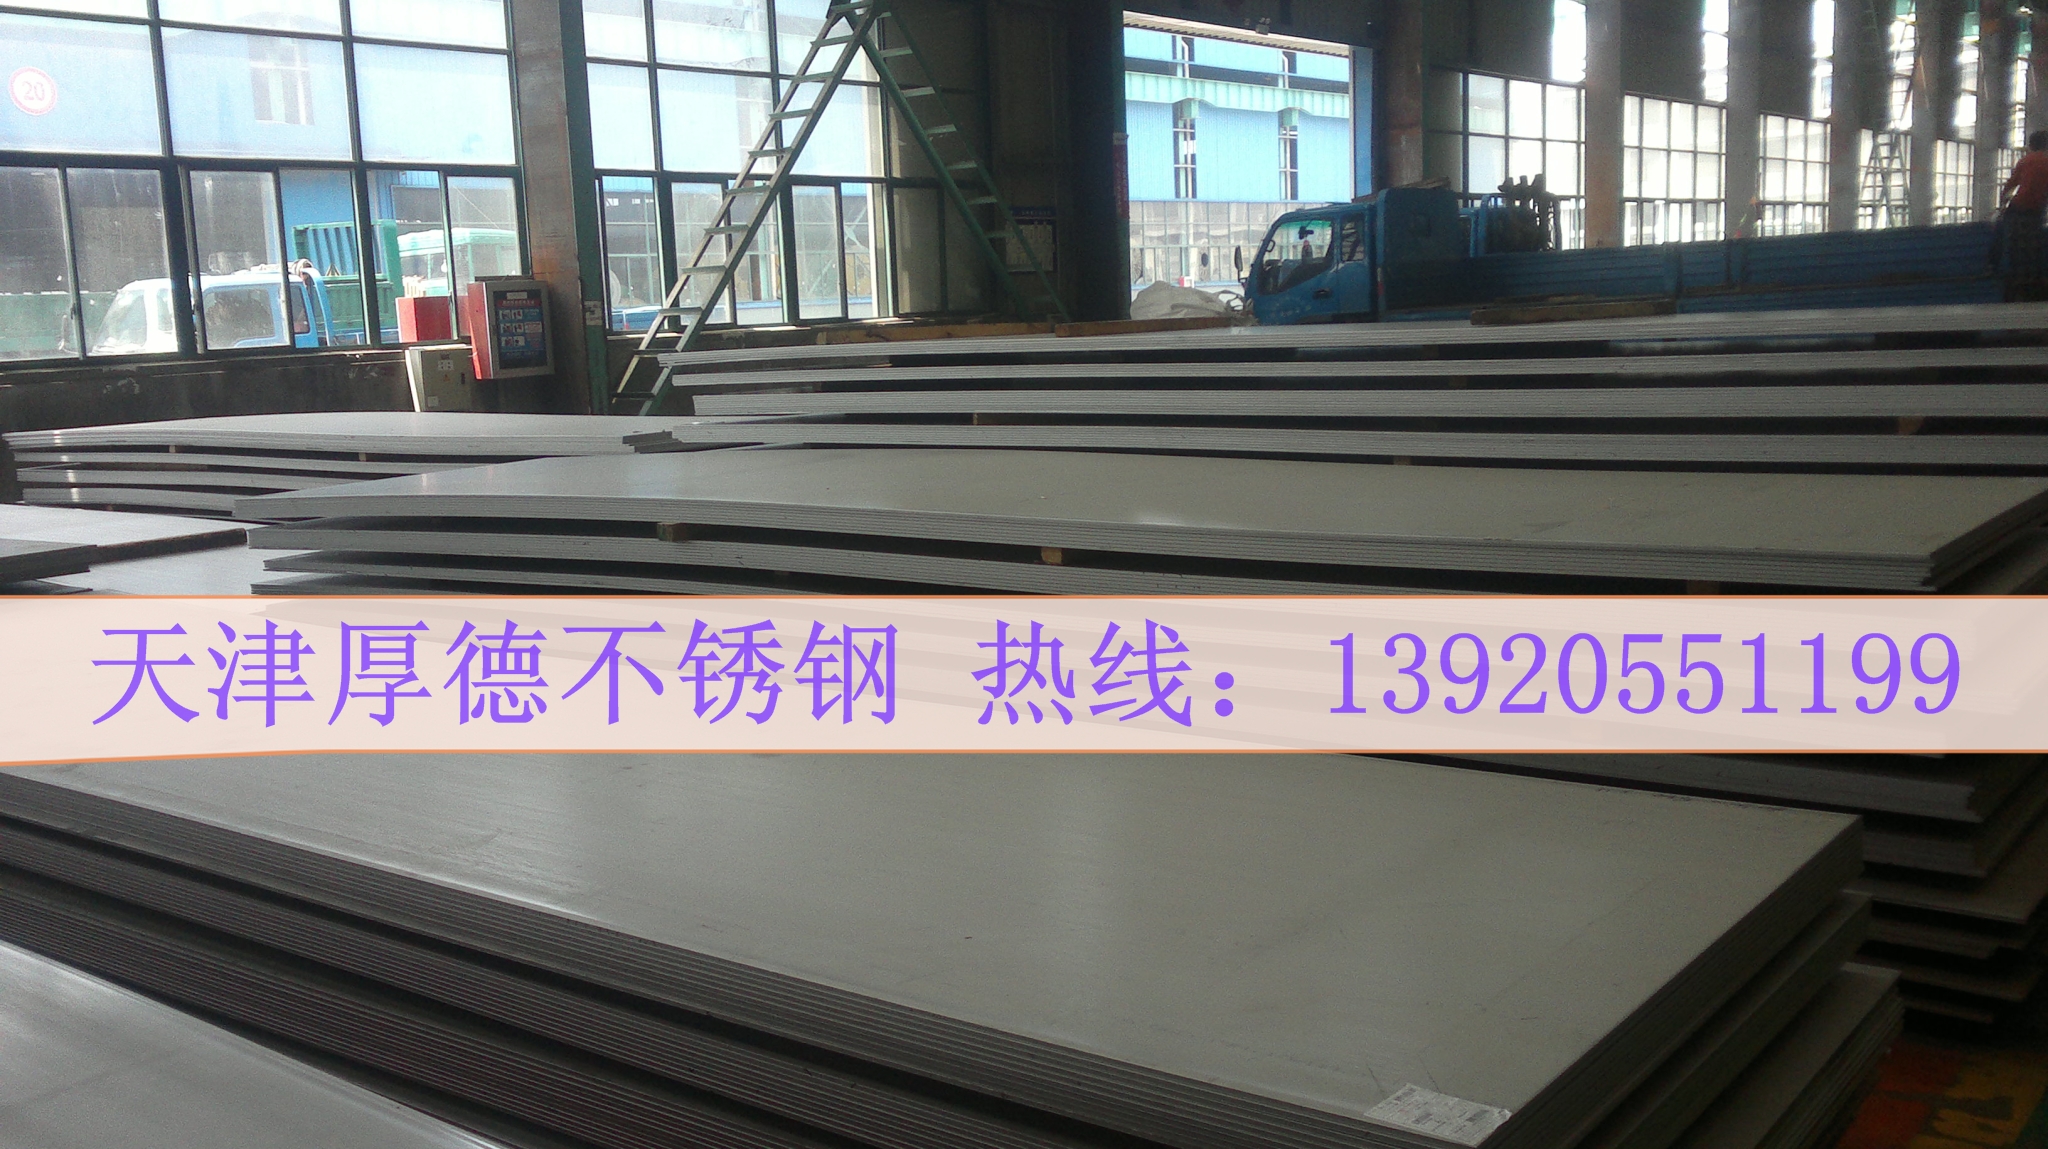 316L耐腐蚀不锈钢板现货切割 316L耐酸碱不锈钢板多少钱 316L耐酸碱不锈钢板哪里有图片